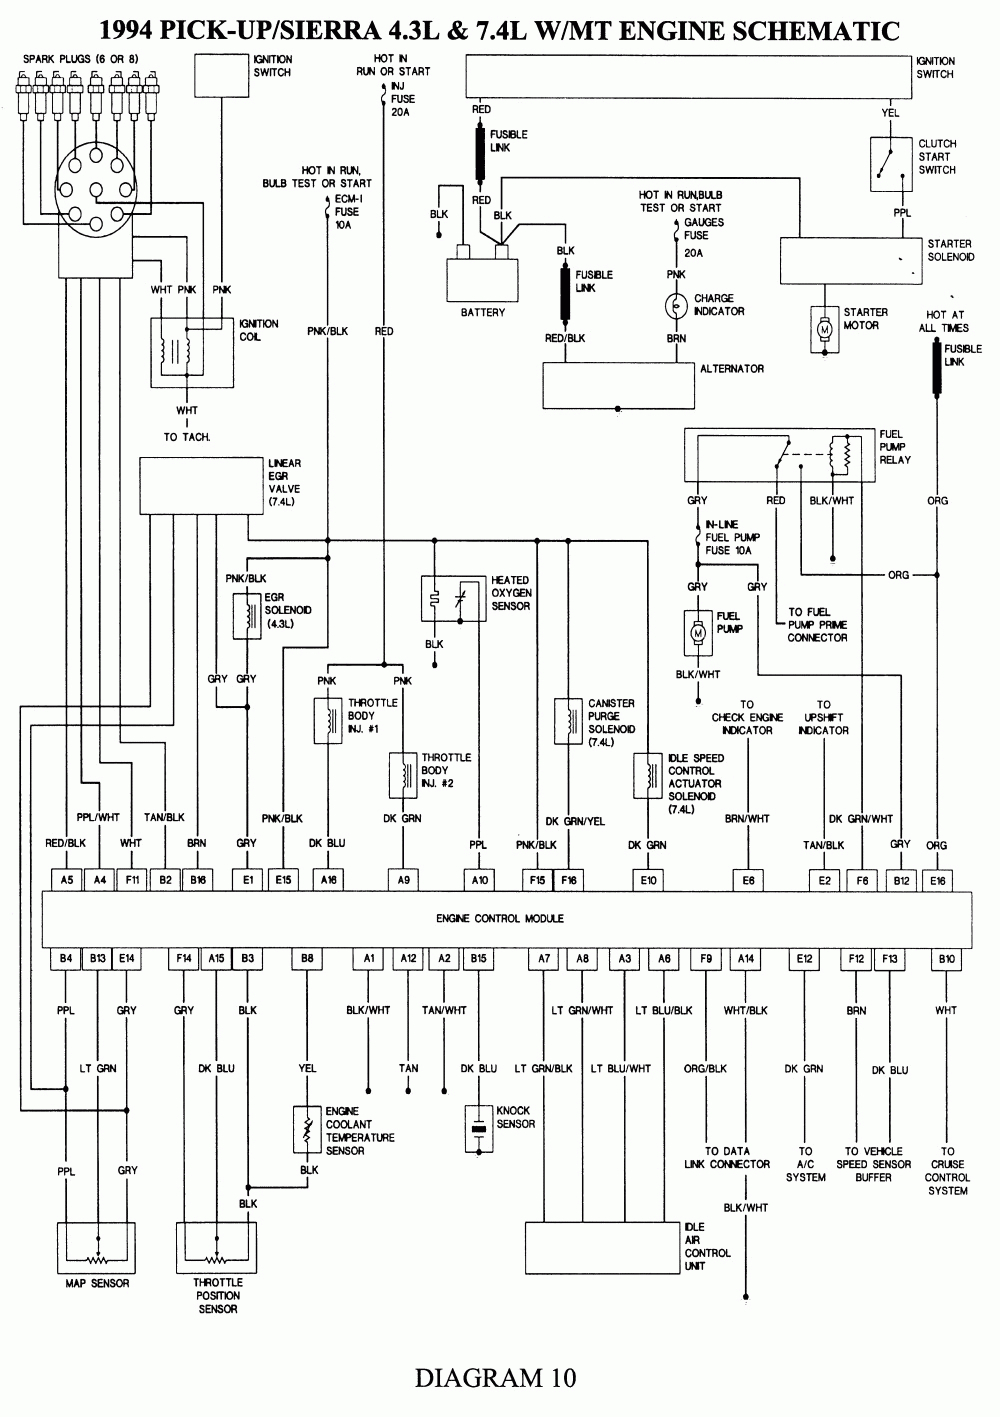 Onan Rv Qg 4000 Generator Wiring Diagram | Wiring Diagram - Onan 4000 Generator Wiring Diagram